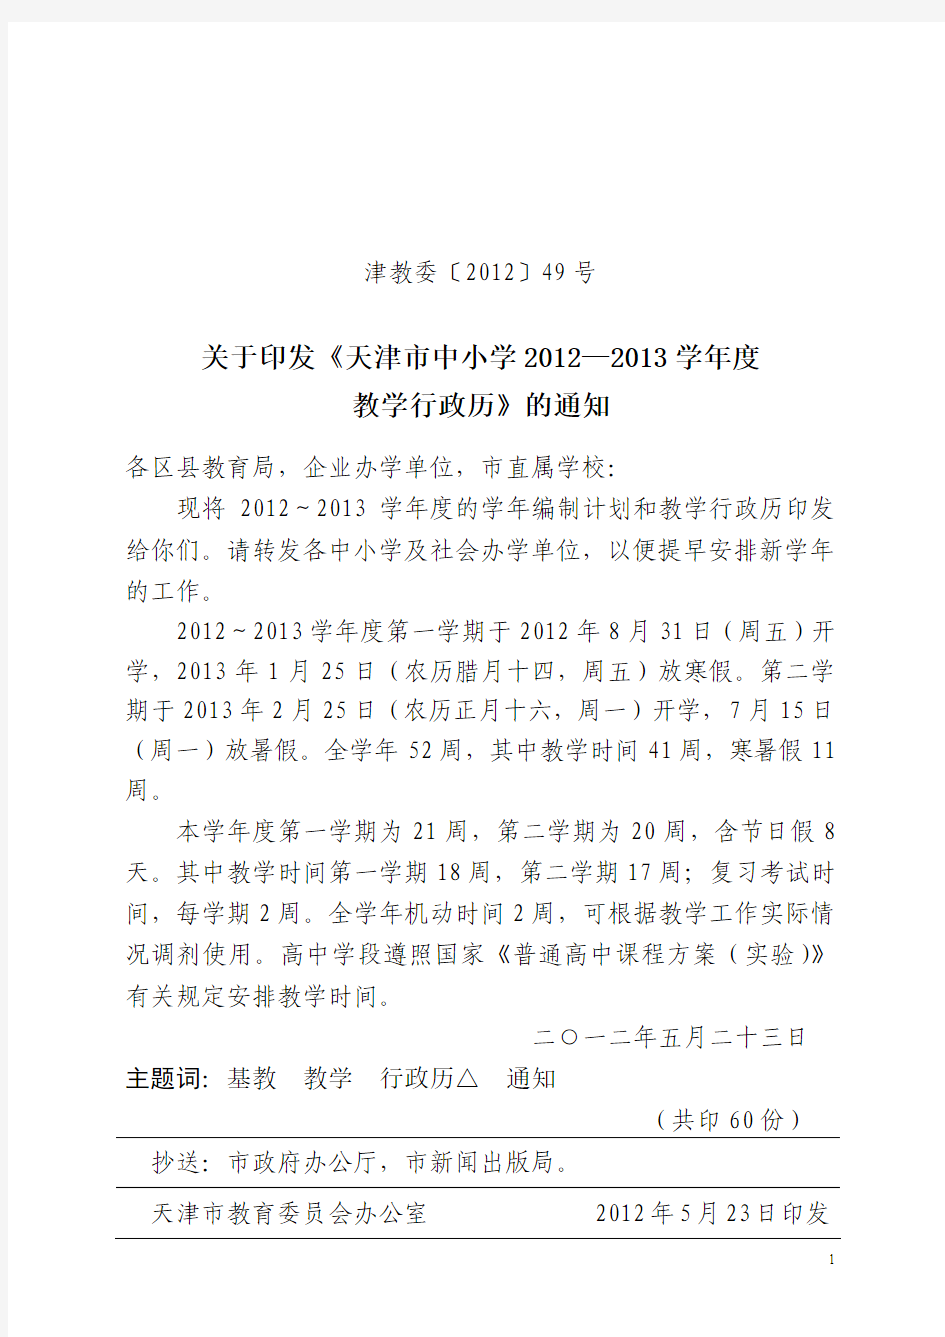 天津中小学2012-2013学年行政历